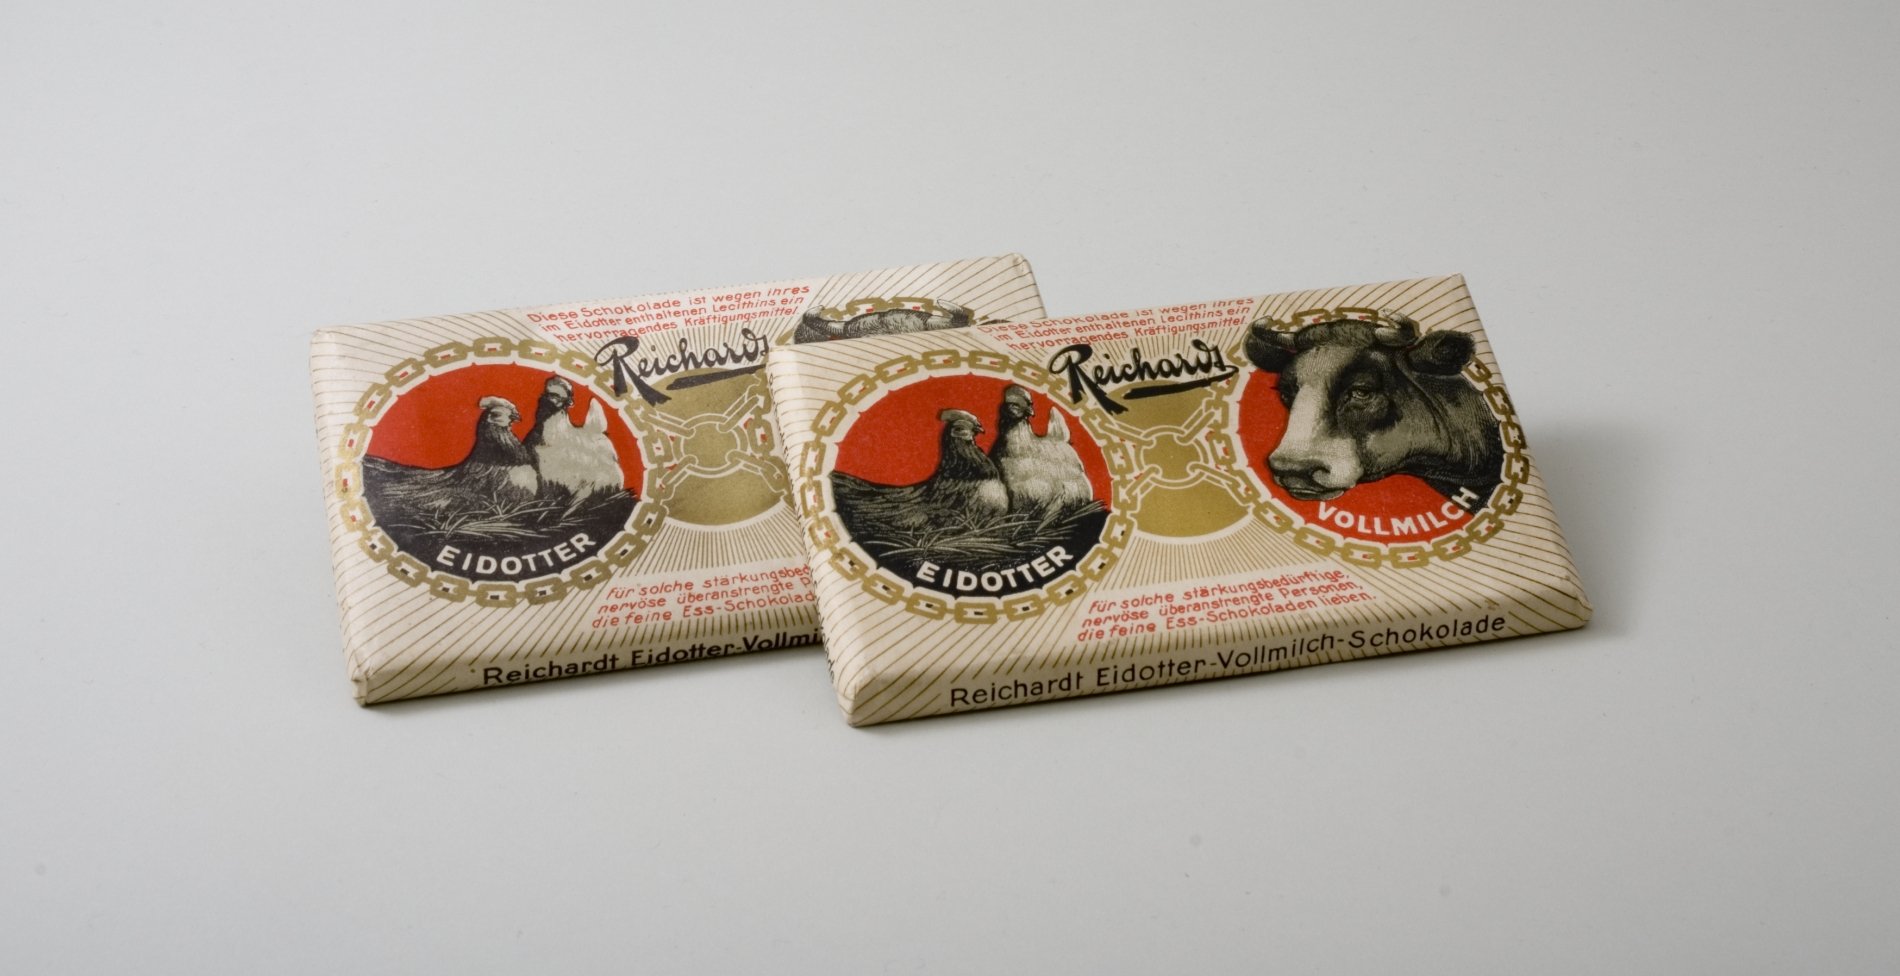 Zwei Schaupackungen "Reichardt Eidotter-Vollmich-Schokolade" (Stiftung Domäne Dahlem - Landgut und Museum, Weiternutzung nur mit Genehmigung des Museums CC BY-NC-SA)